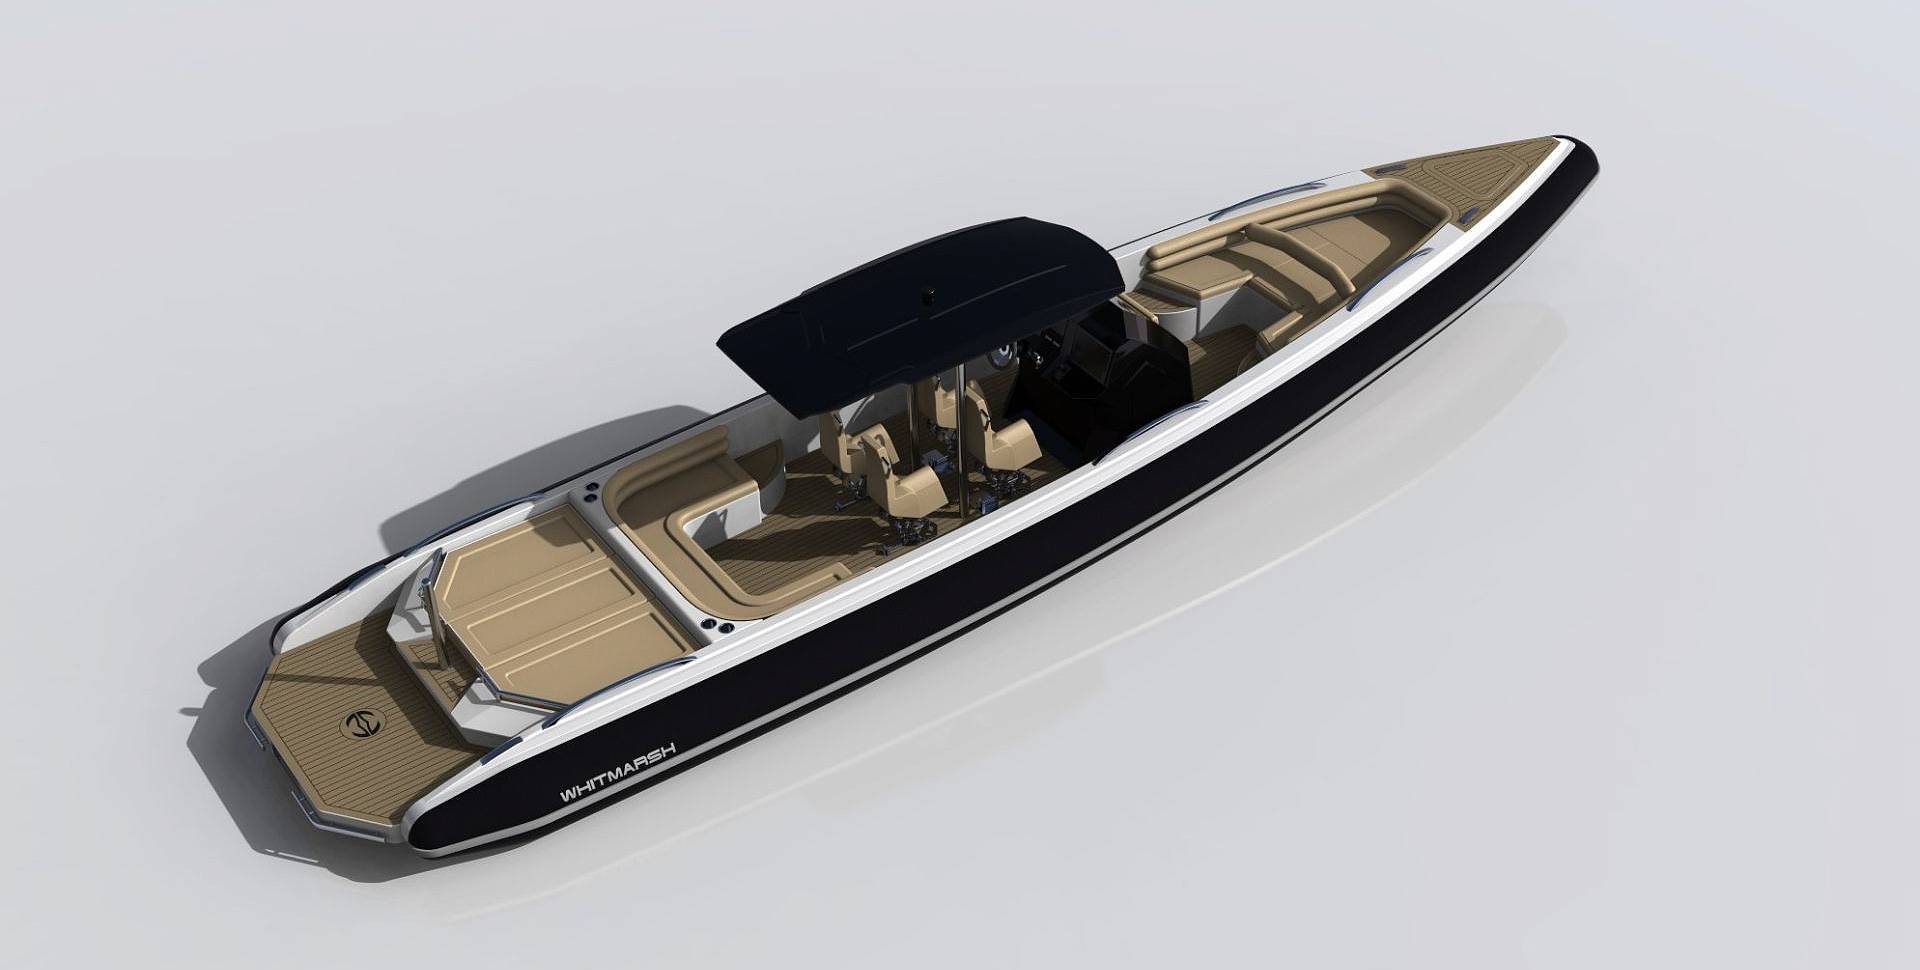 Whitmarsh 11.5m Tender yacht